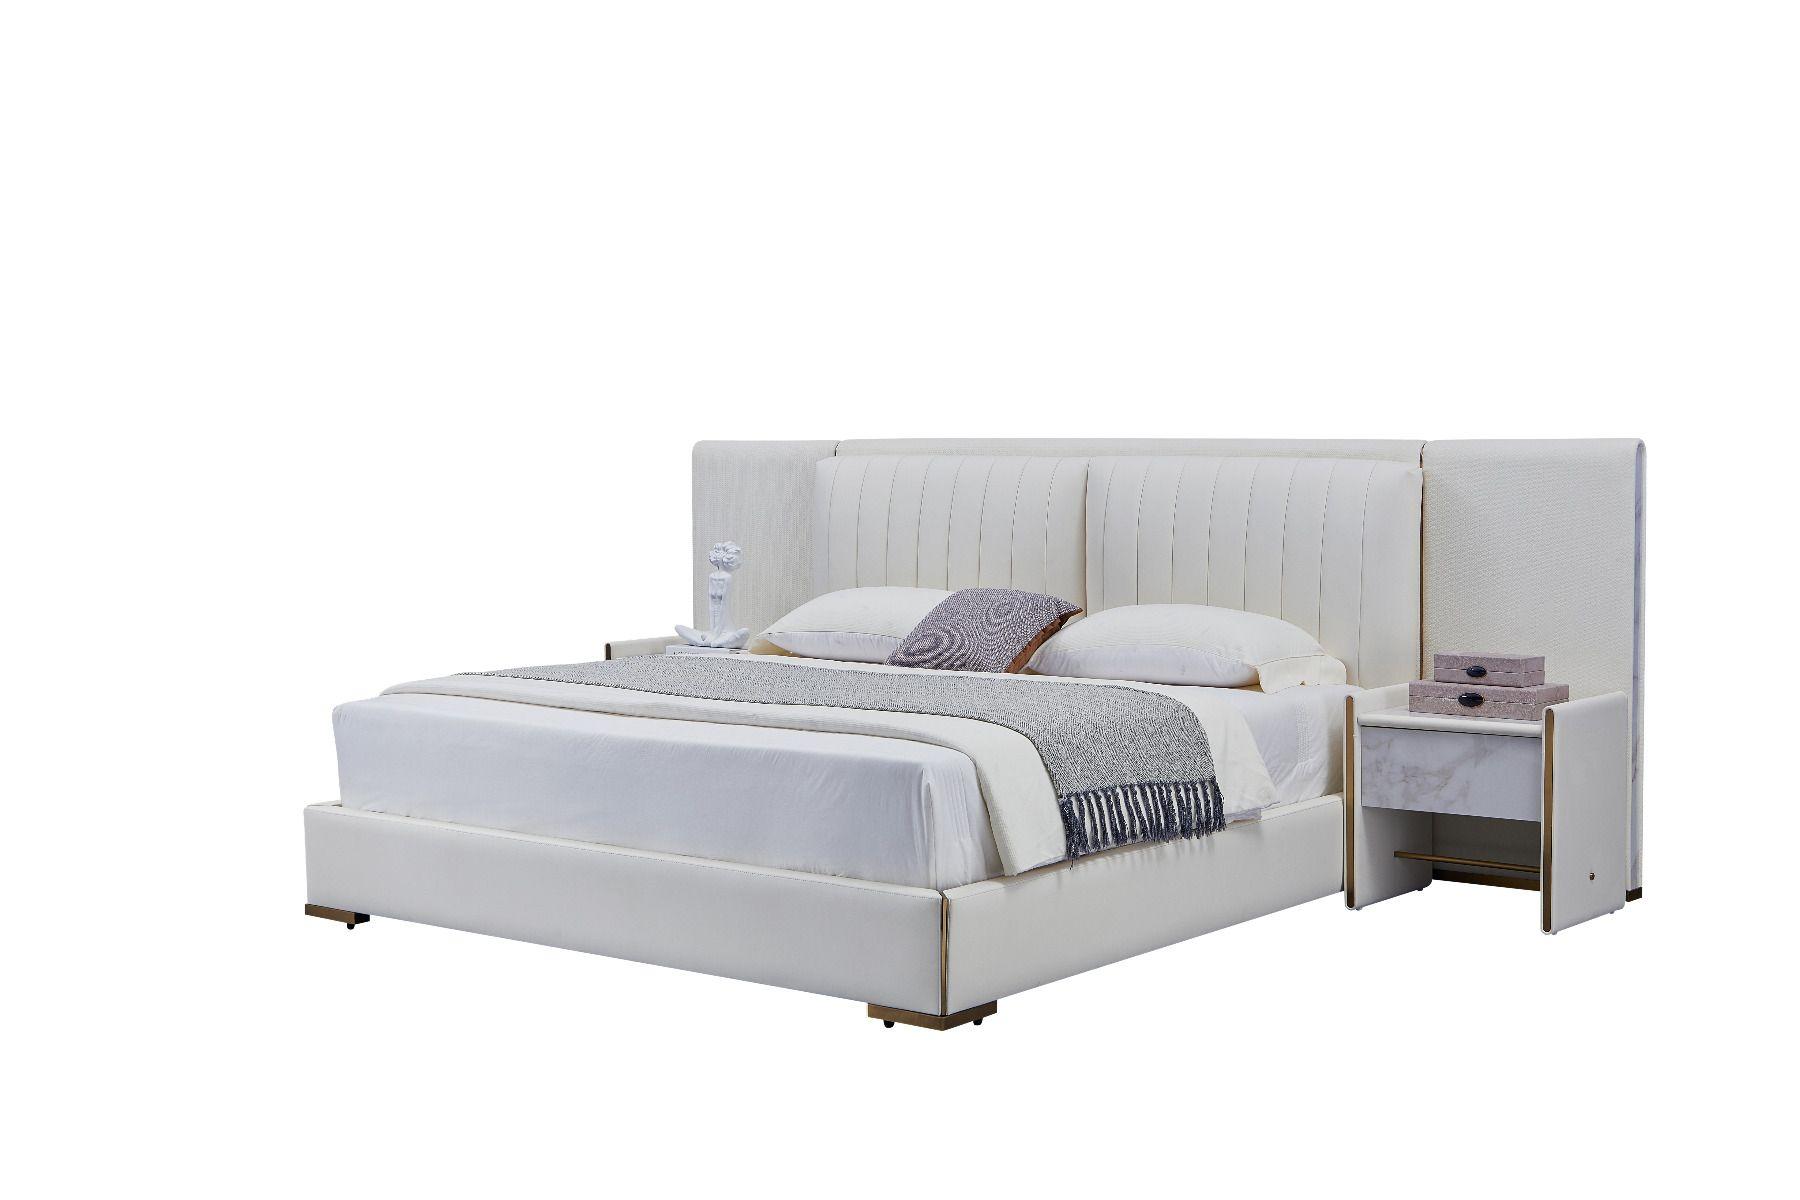 Contemporary, Modern Platform Bedroom Set B-Y2008-EK / NS-Y2008 B-Y2008-EK-3PC in Gray Genuine Leather